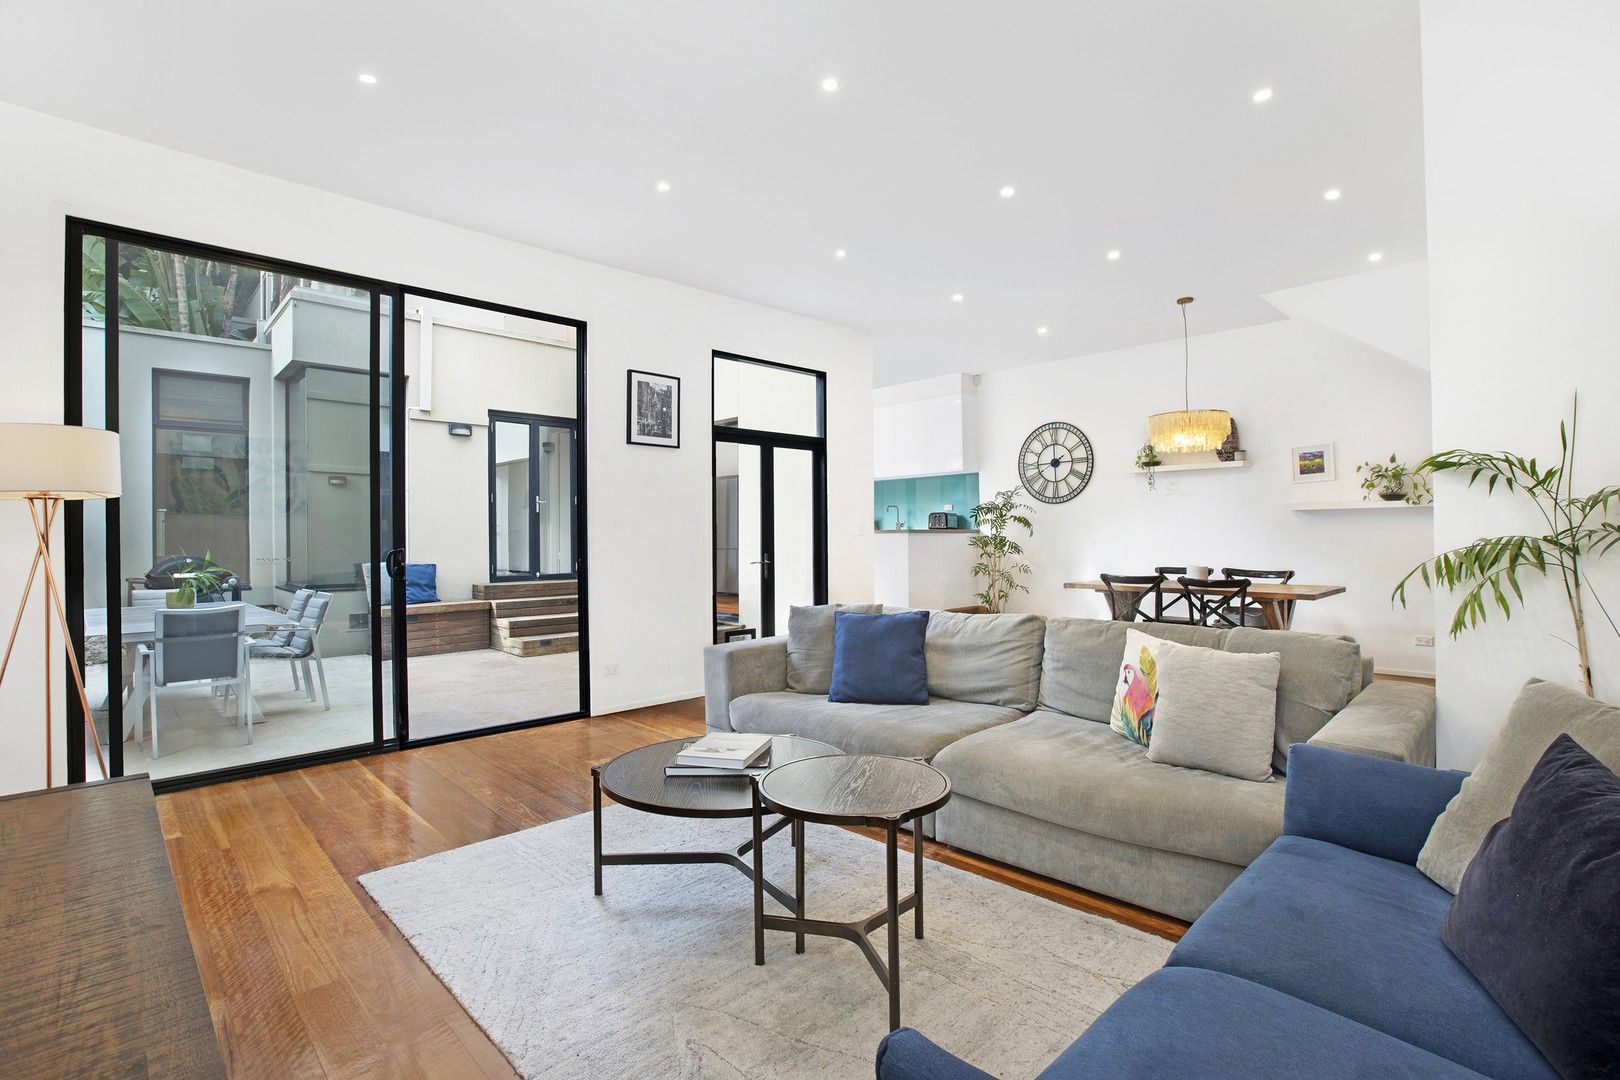 3 bedrooms House in 33a Meymott Street RANDWICK NSW, 2031